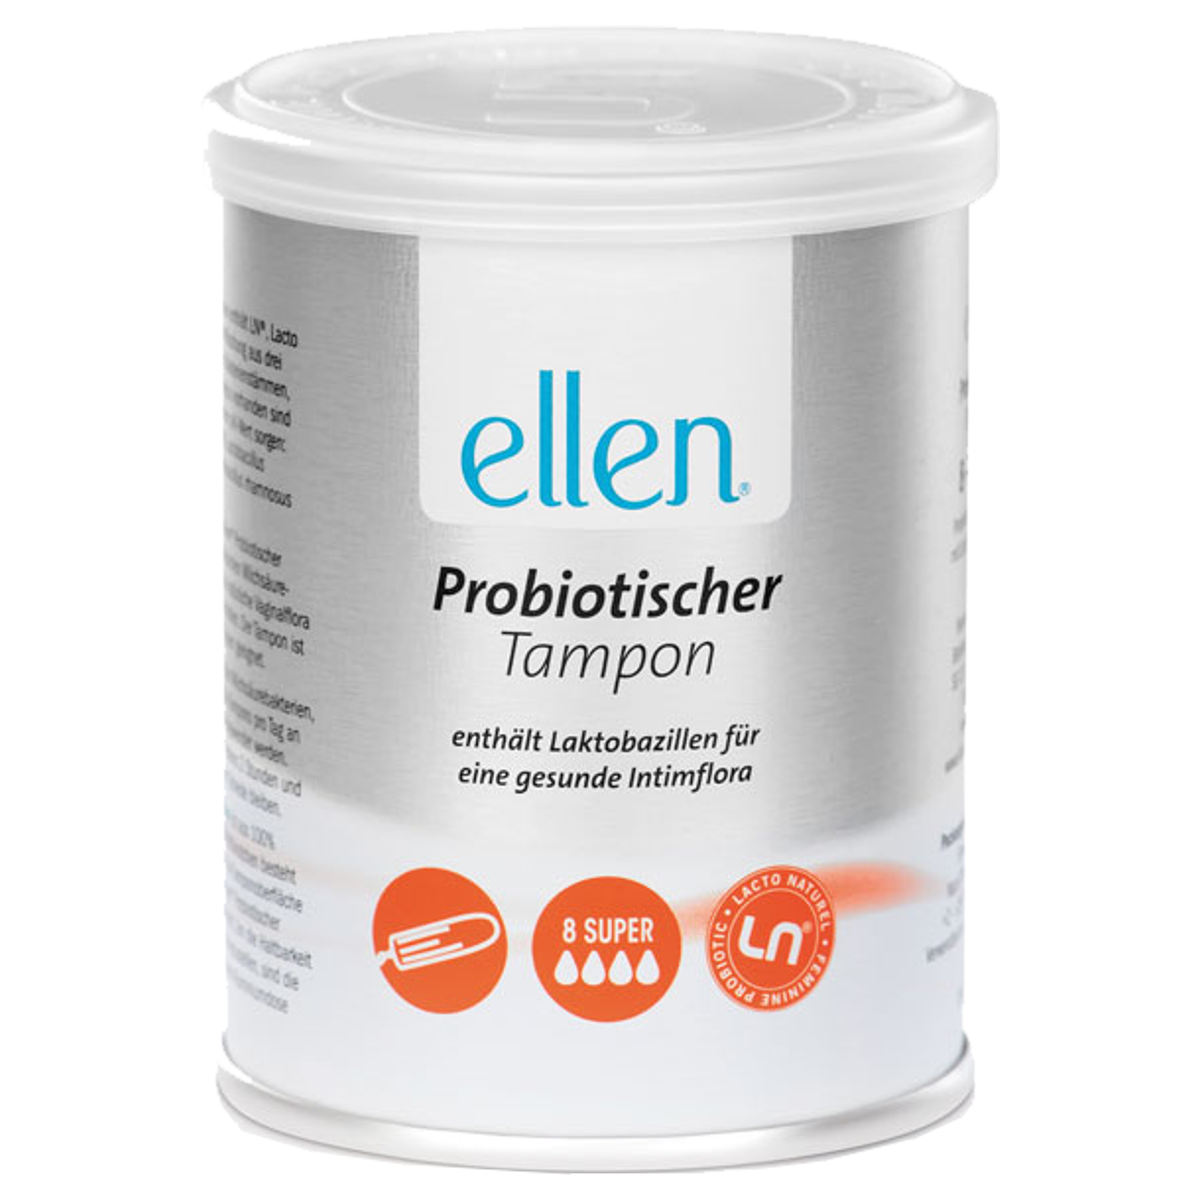 Ellen_Probiotic_Tampons_Super_online_kaufen